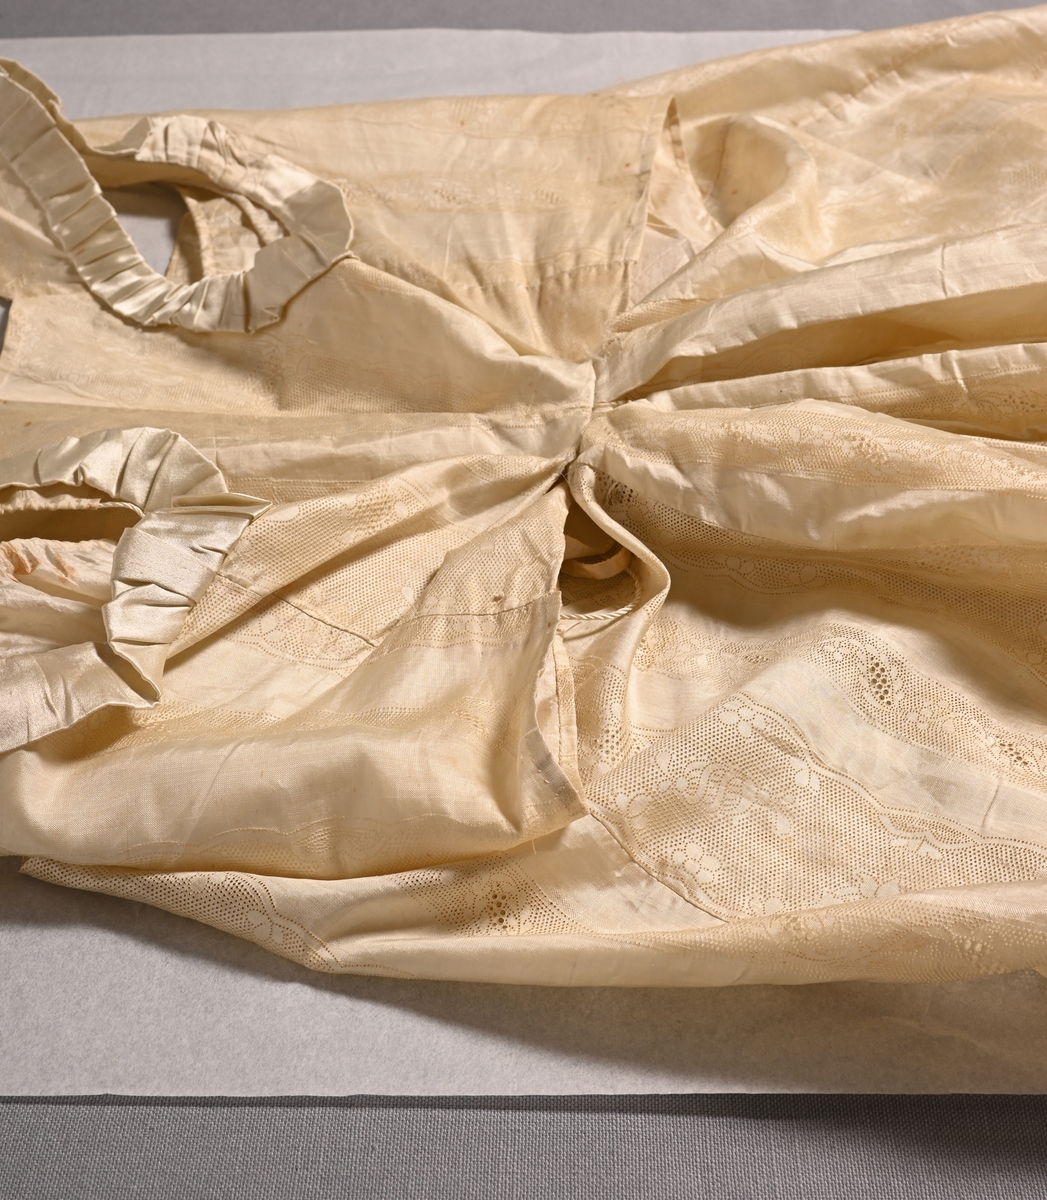 Brudklänning i empirstil från Torpa stenhus, 1815. Naturgul sidenjapon med stansat spetsmönster i form av bredare och smalare bårder med hål- och blommönster. Ärmlöst, kort liv; ärmhålen kantade med rynkad sidensatin. Djup urringning med dragsko av tvinnat silke med tofs i var ände, framstyckena utan knäppning. Innerfoder med dragsko av platt sidenband i ringningen, förövrigt ingen knäppning. Smalt ryggparti, livet endast fastsytt i kjolen mitt bak.

Kjolen samlad i flera veck mitt bak, i övrigt rak med långt släp. Nederkanten kantad runt om med ca 7 cm brett stycke sidensatin med fastsydda veckade rosetter i flortyg.